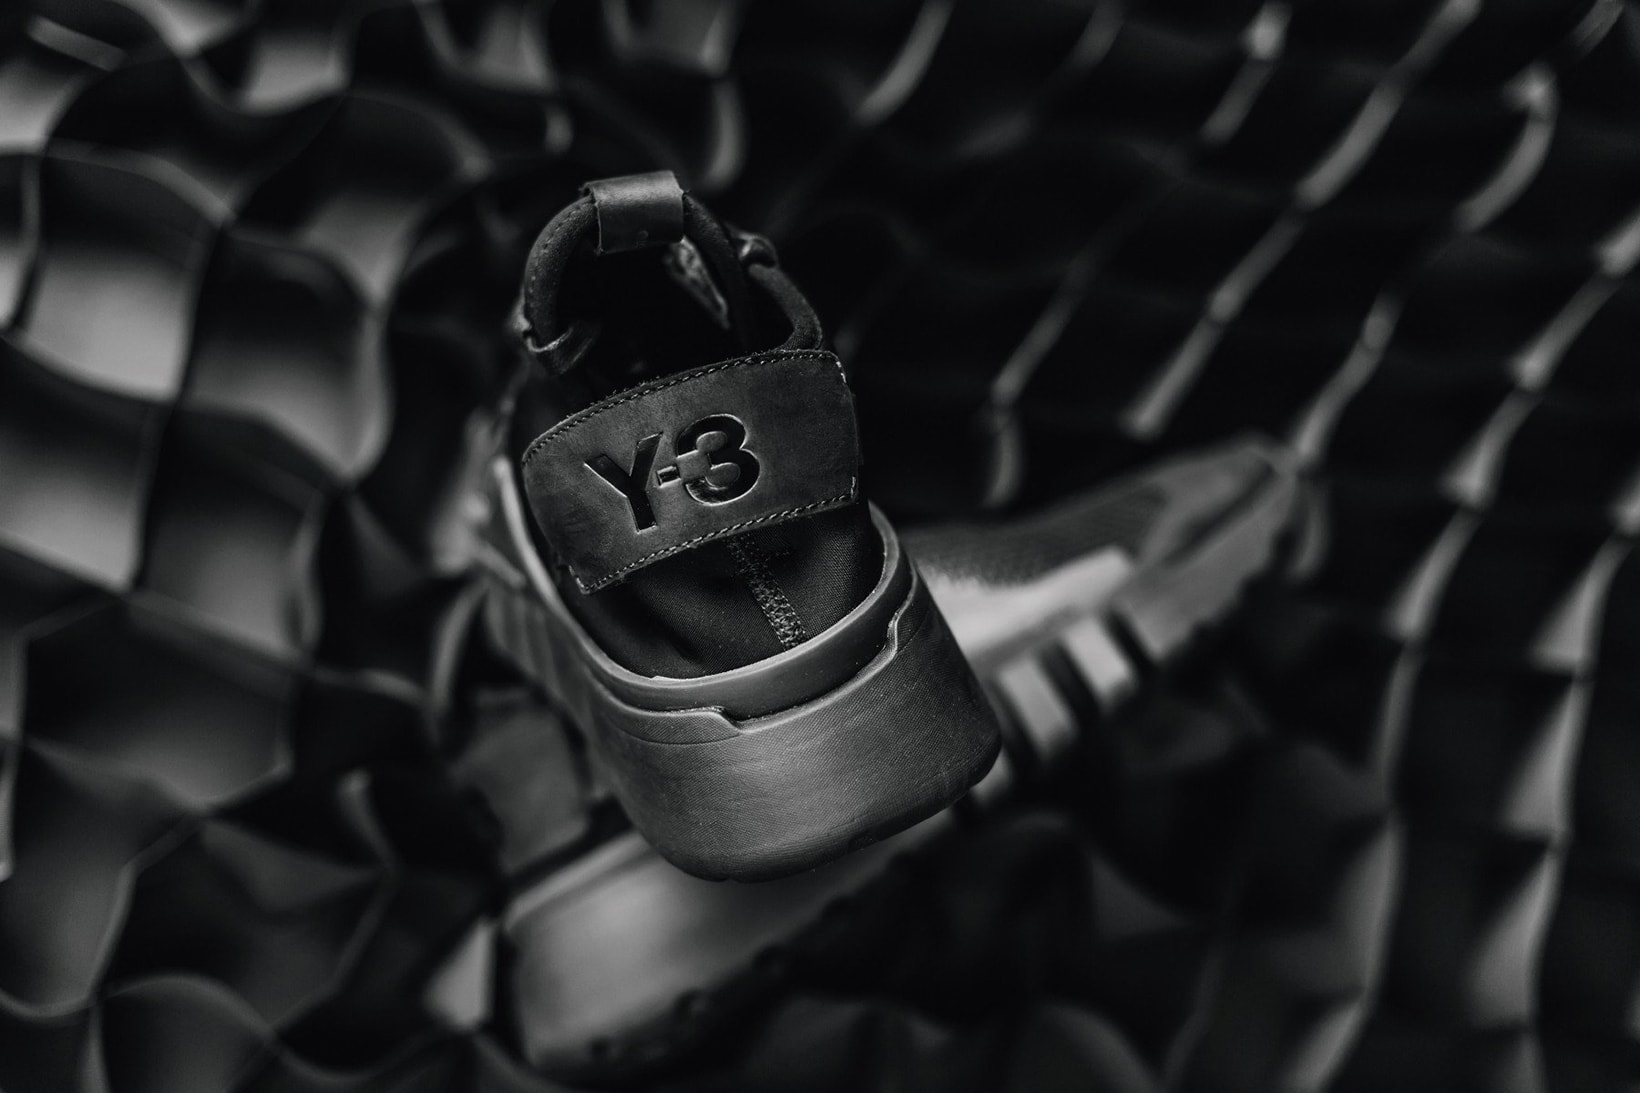 Y3 Ayero Triple Black adidas Yohji Yamamoto 2017 Fall Winter Sneakers Shoes Footwear July Release Date Info